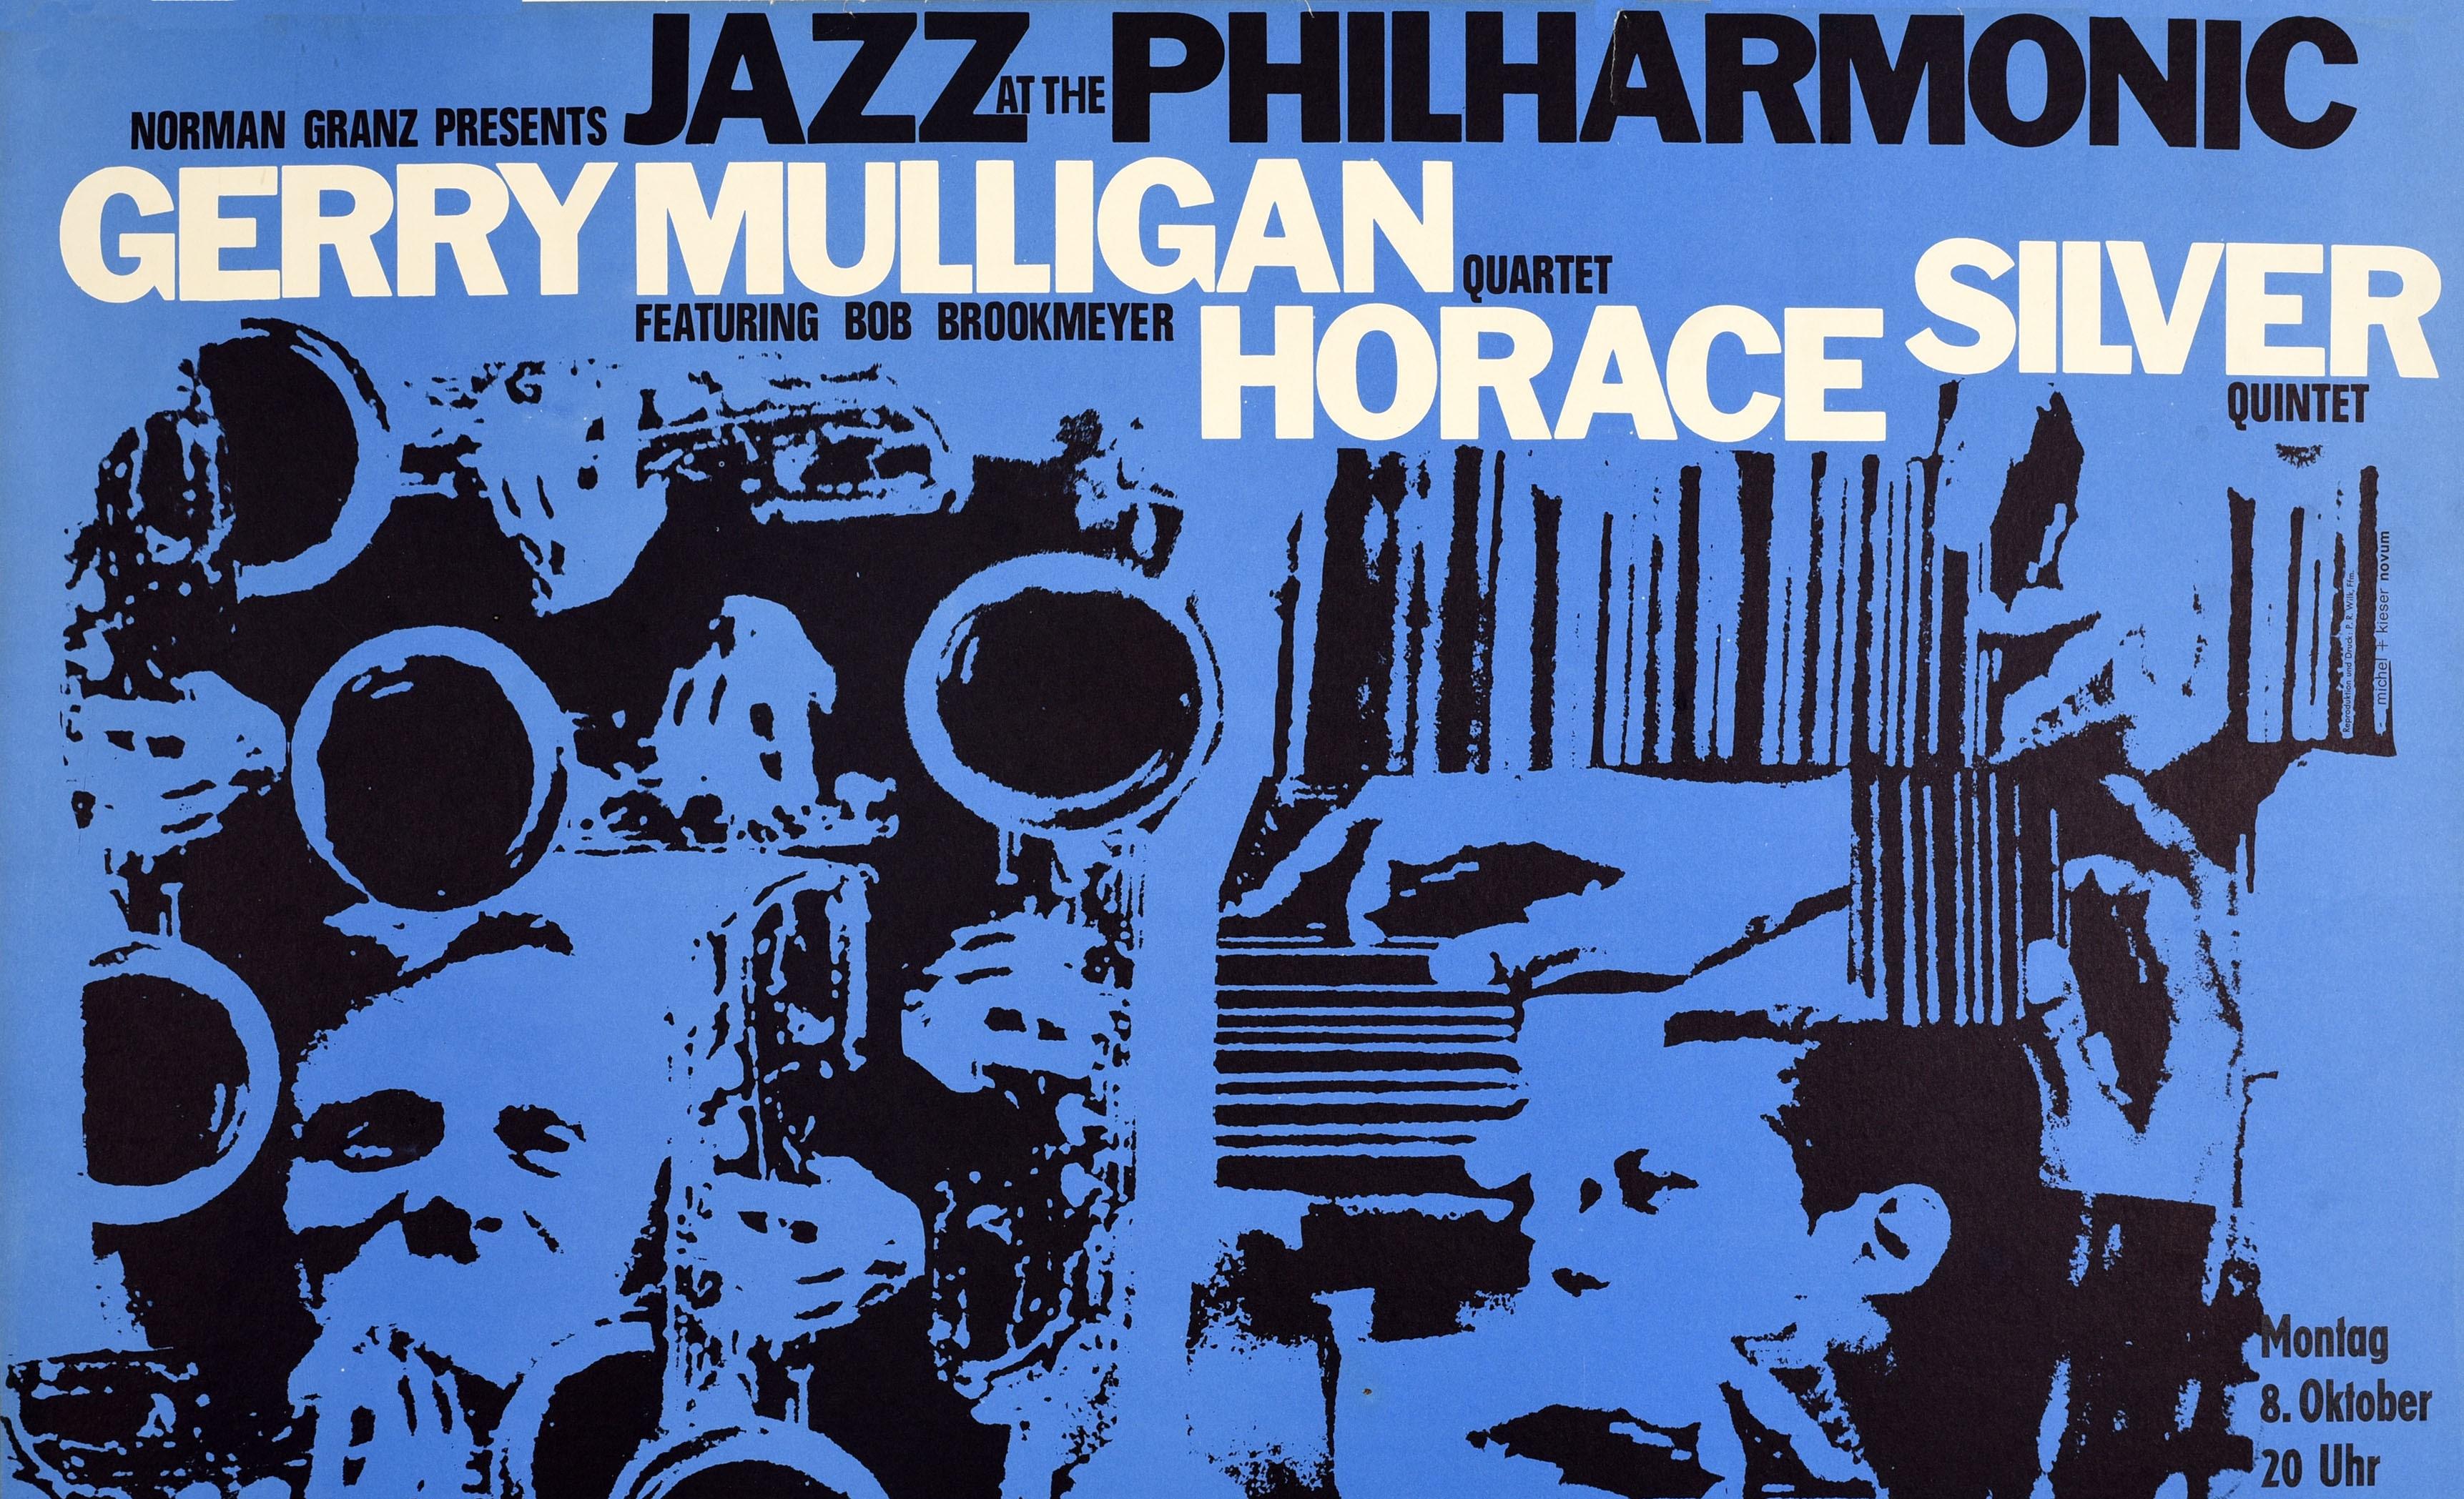 Affiche musicale originale vintage pour le concert Norman Granz presents Jazz at the Philharmonic Gerry Mulligan Quartet featuring Bob Brookmeyer Horace Silver Quintet représentant un grand dessin de musiciens sur le fond bleu, le titre en gras